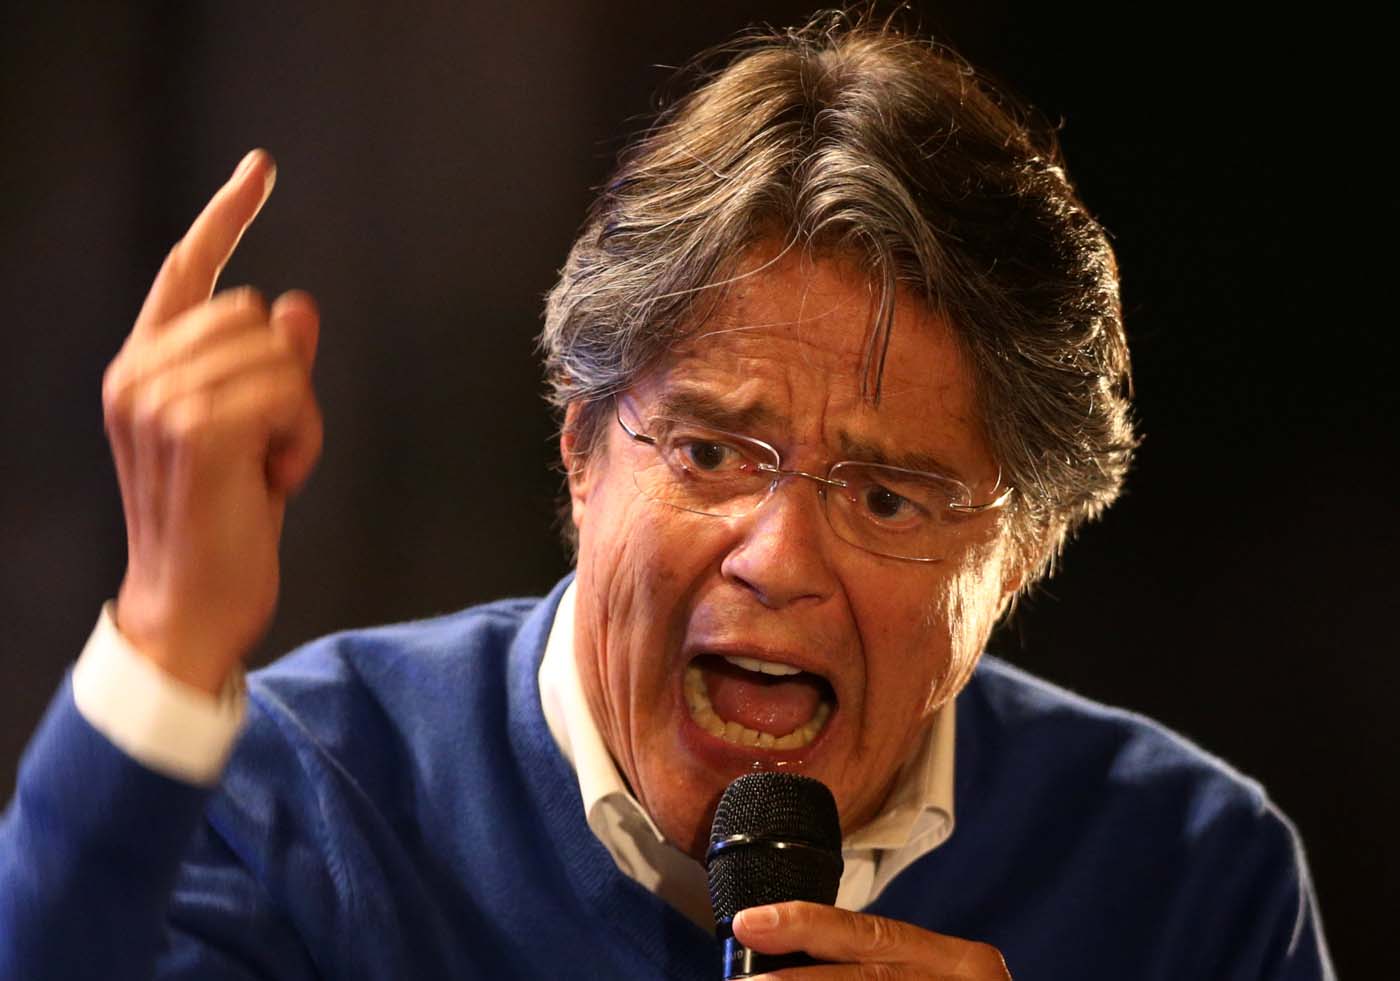 Candidato a presidente de Ecuador pide votos para que su país “no se convierta en Venezuela”